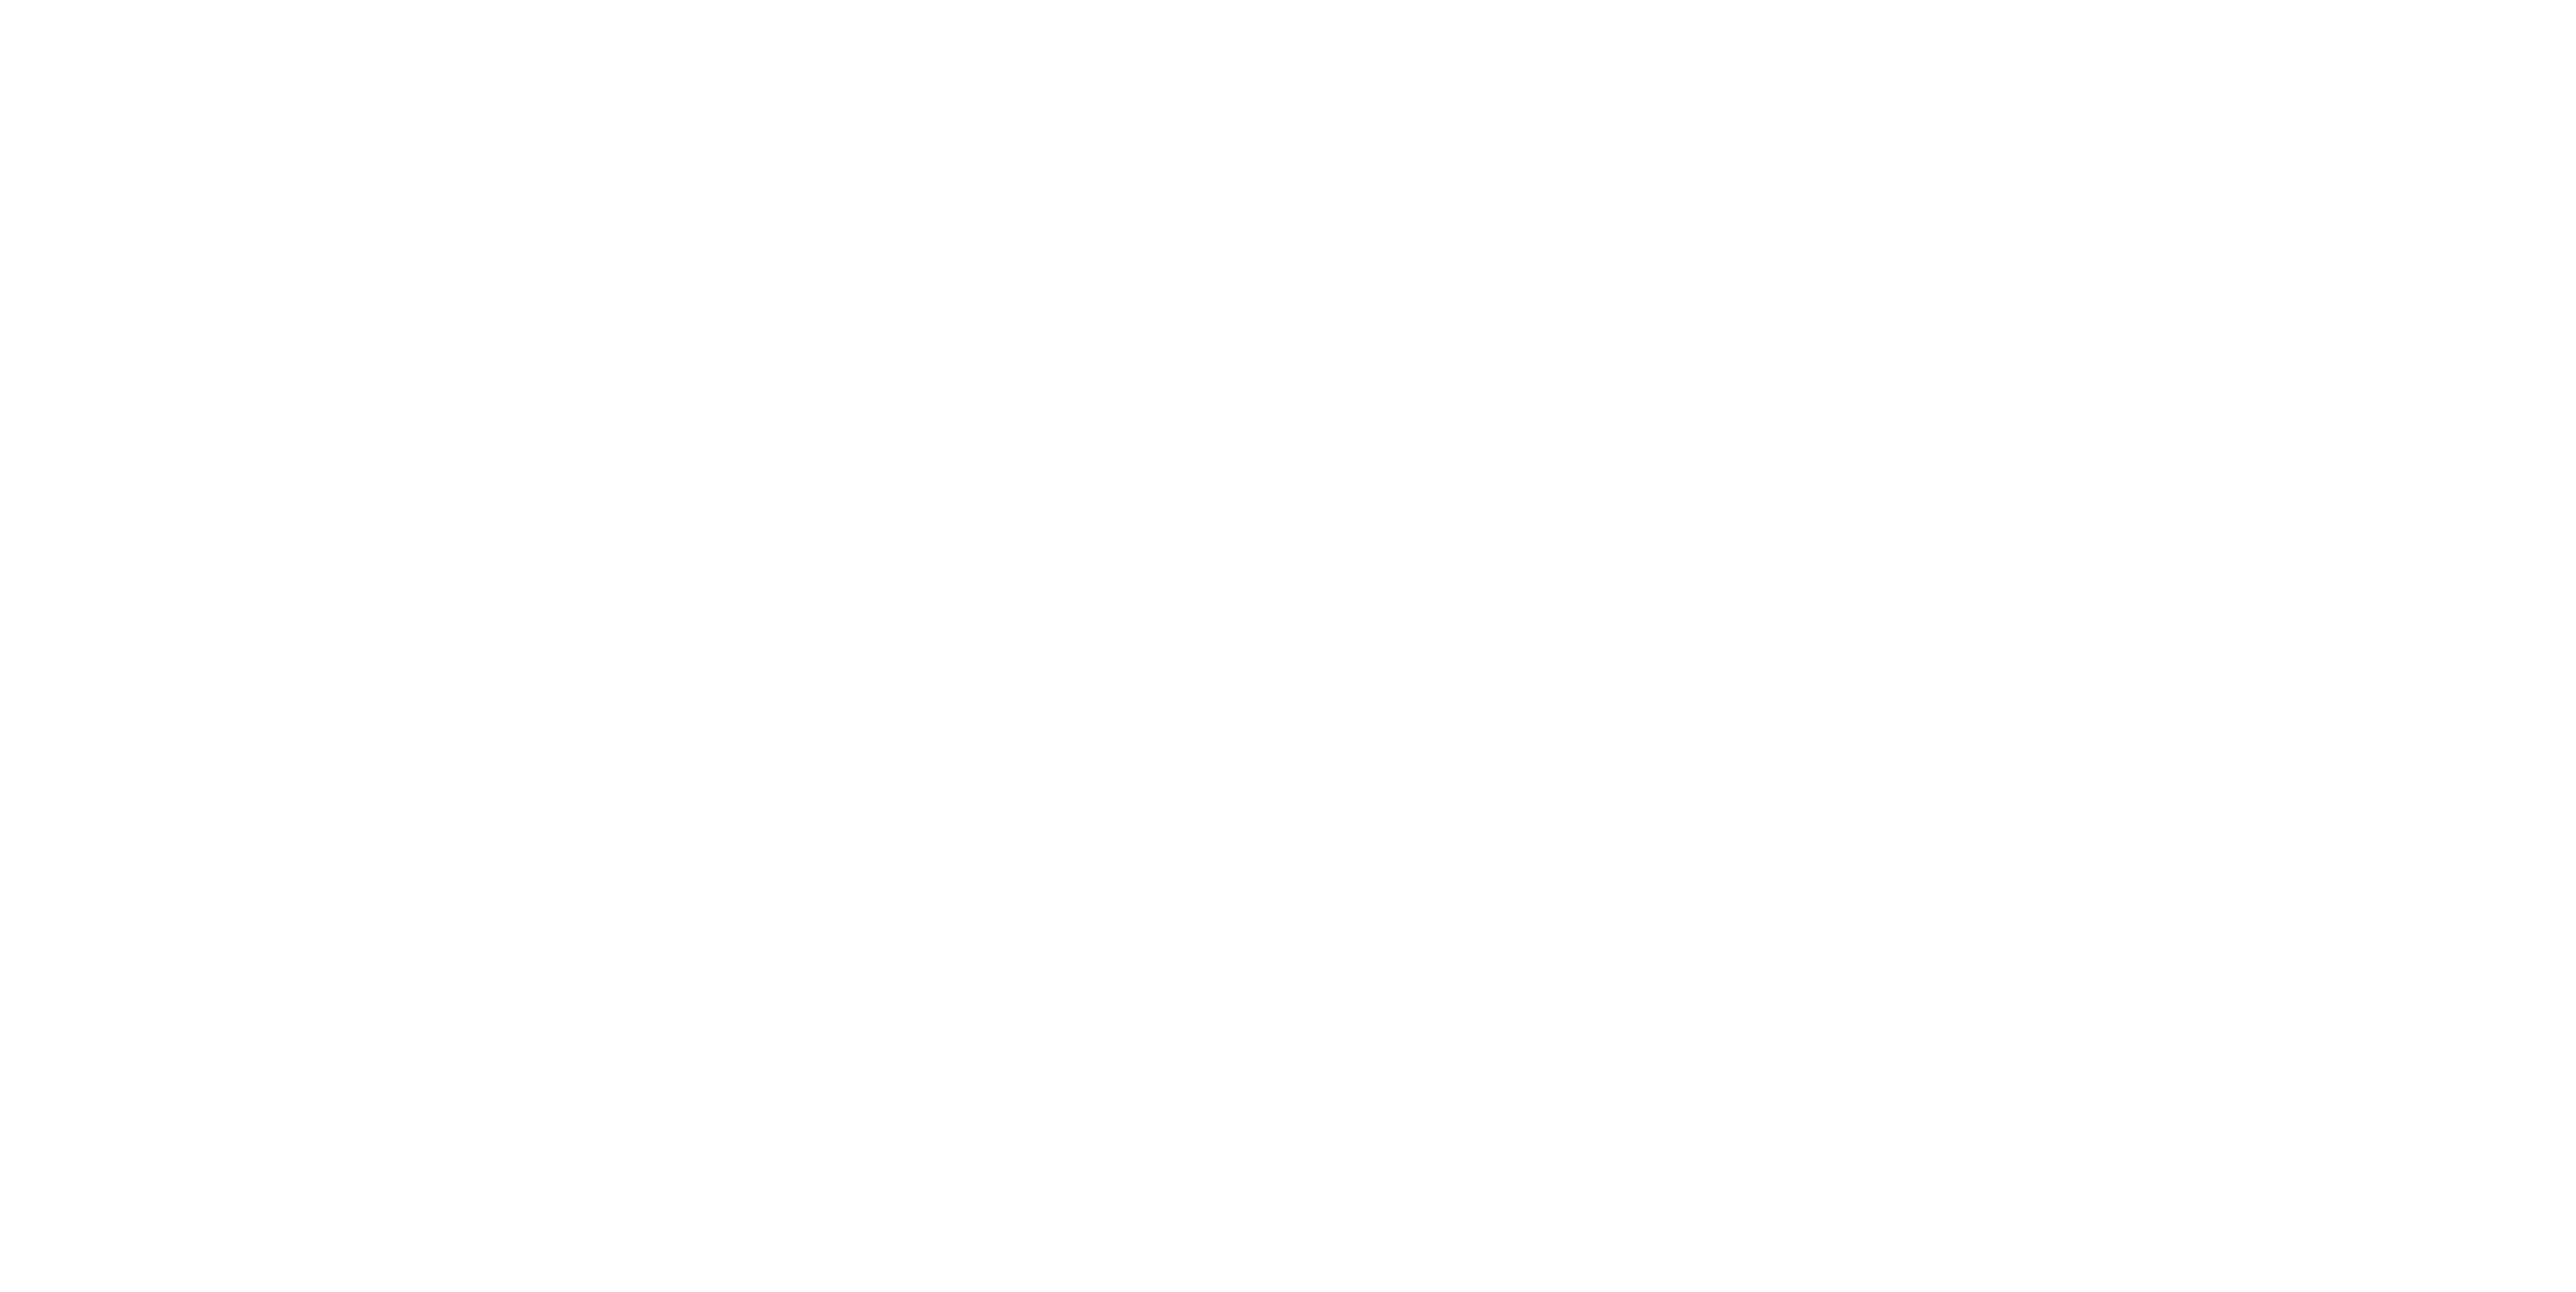 cayman islands stingray city tour